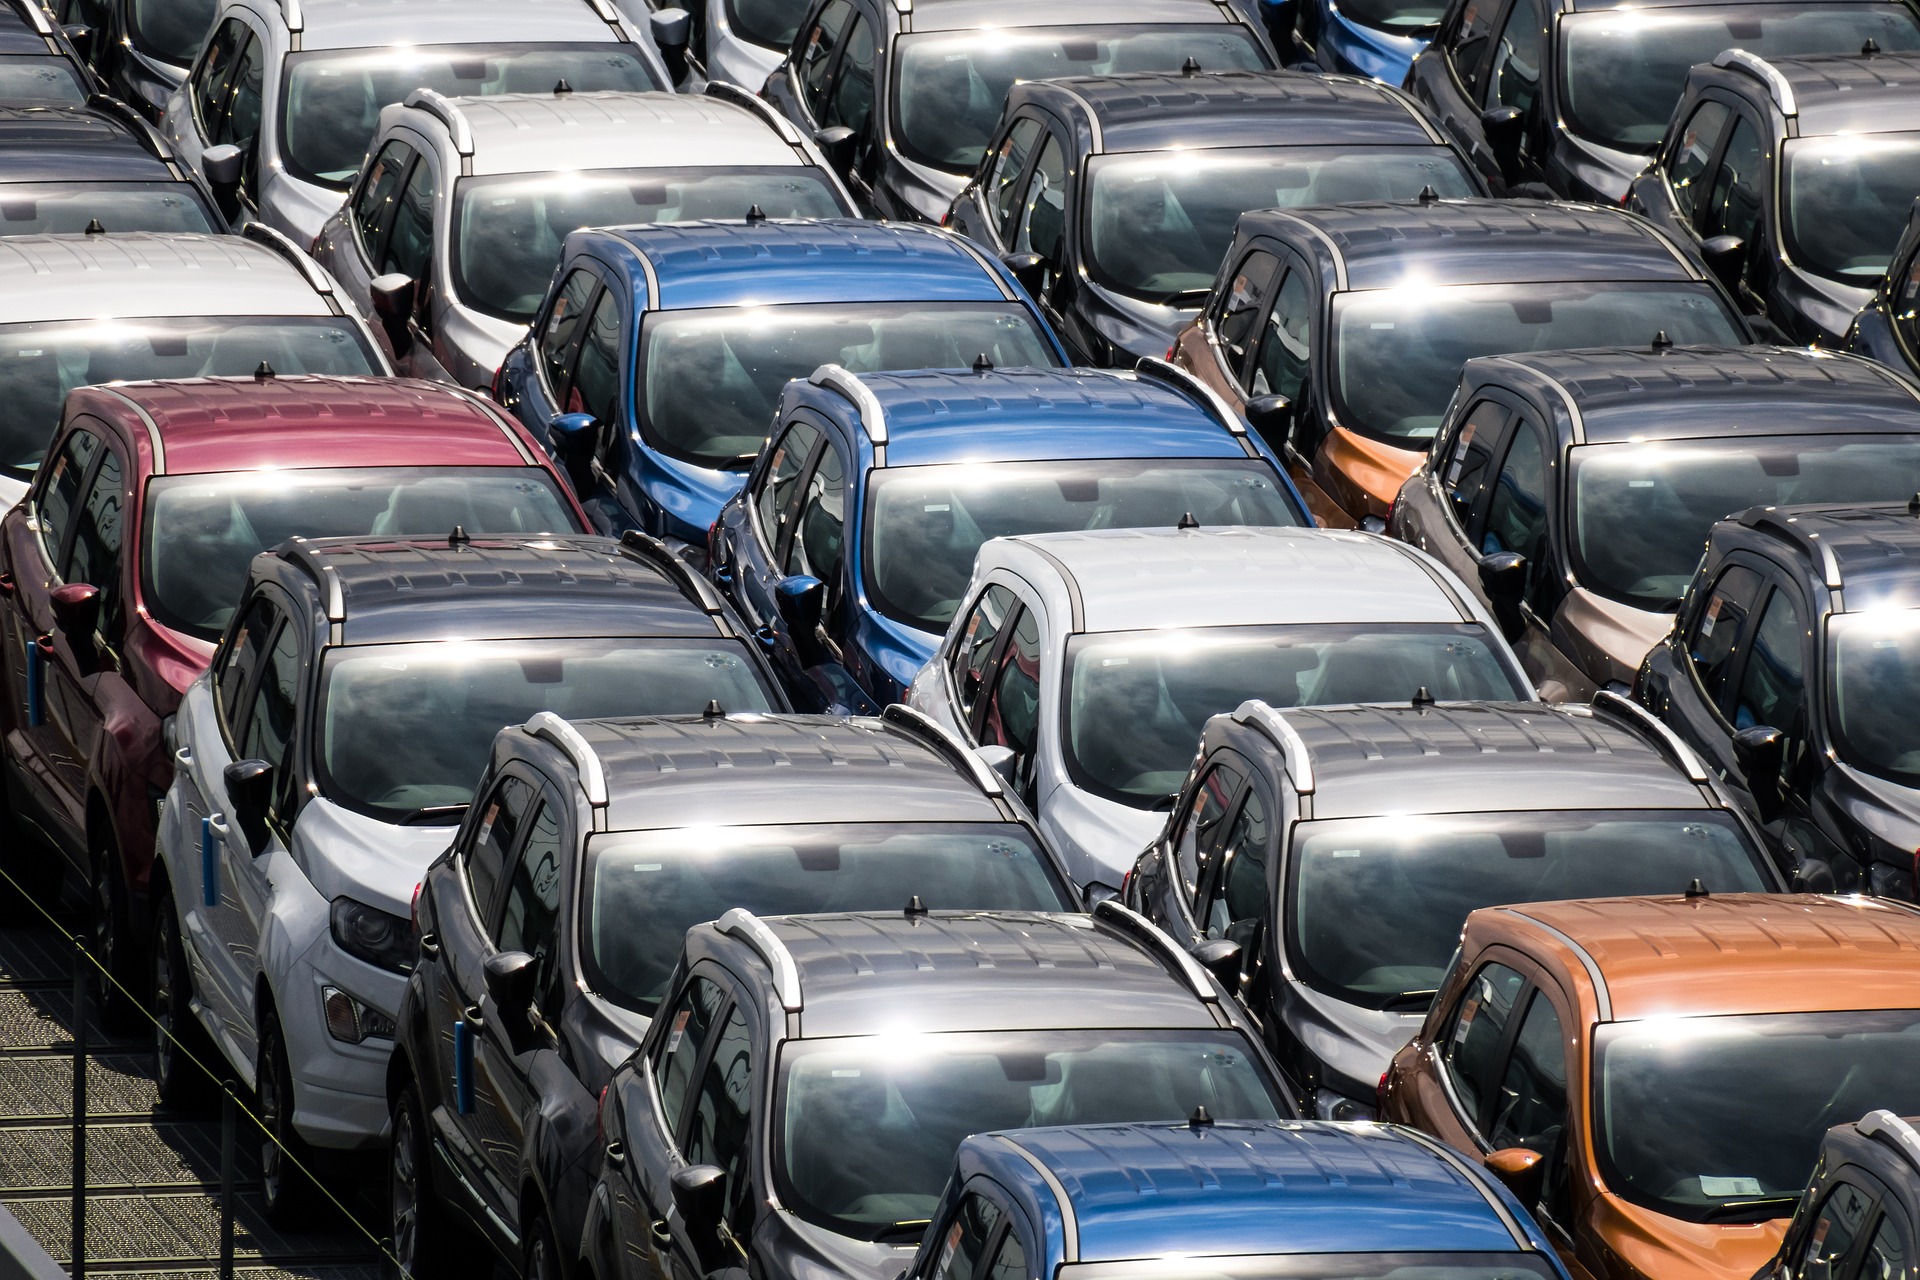 Parking de vehículos de segunda mano o de ocasión esperando a ser tasados para prepararlos para la venta. | Mycaready Technologies SL